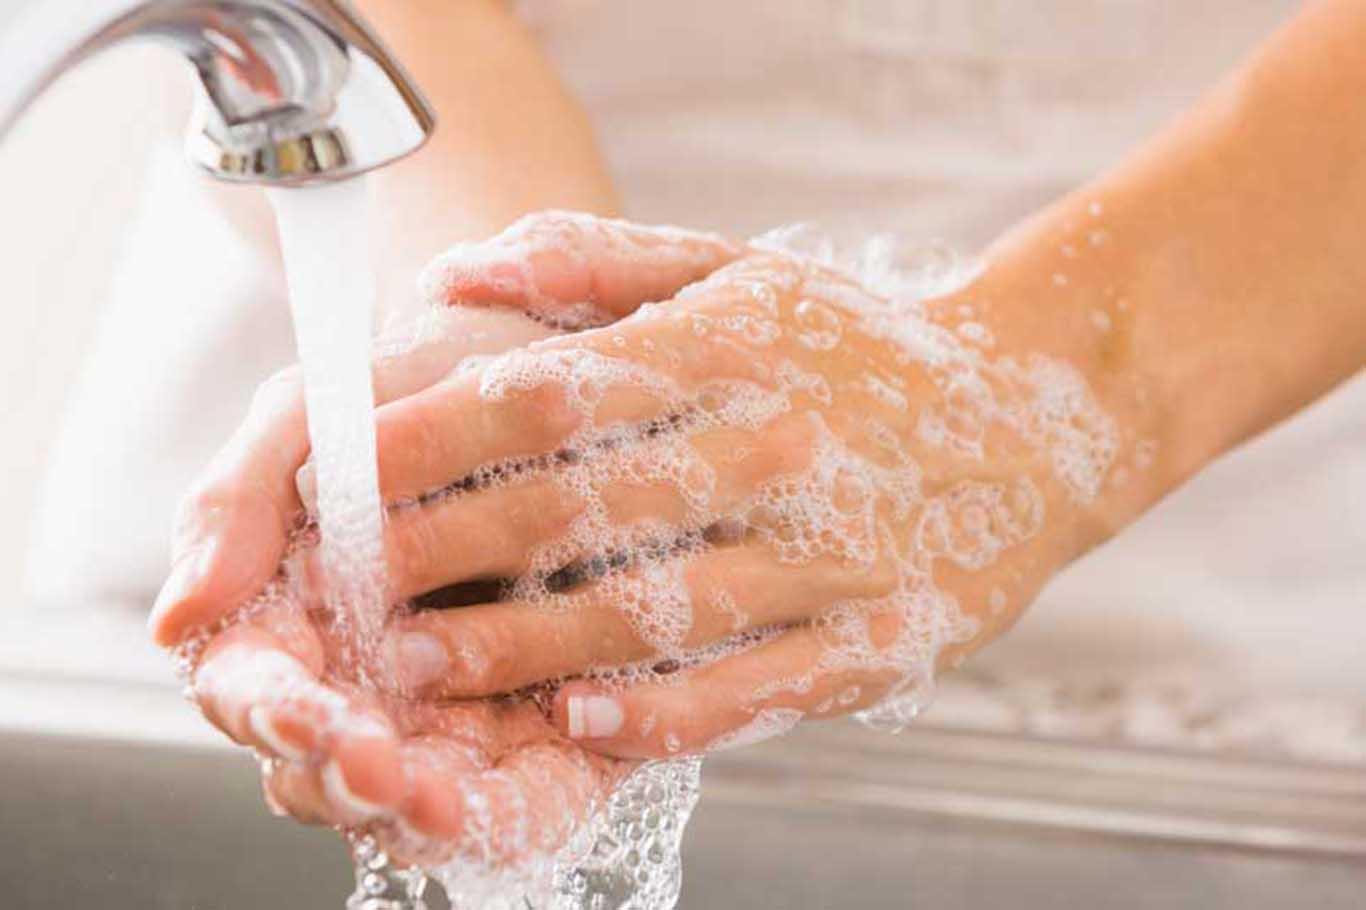 Enfeksiyonların bulaşmaması için el temizliği çok önemli